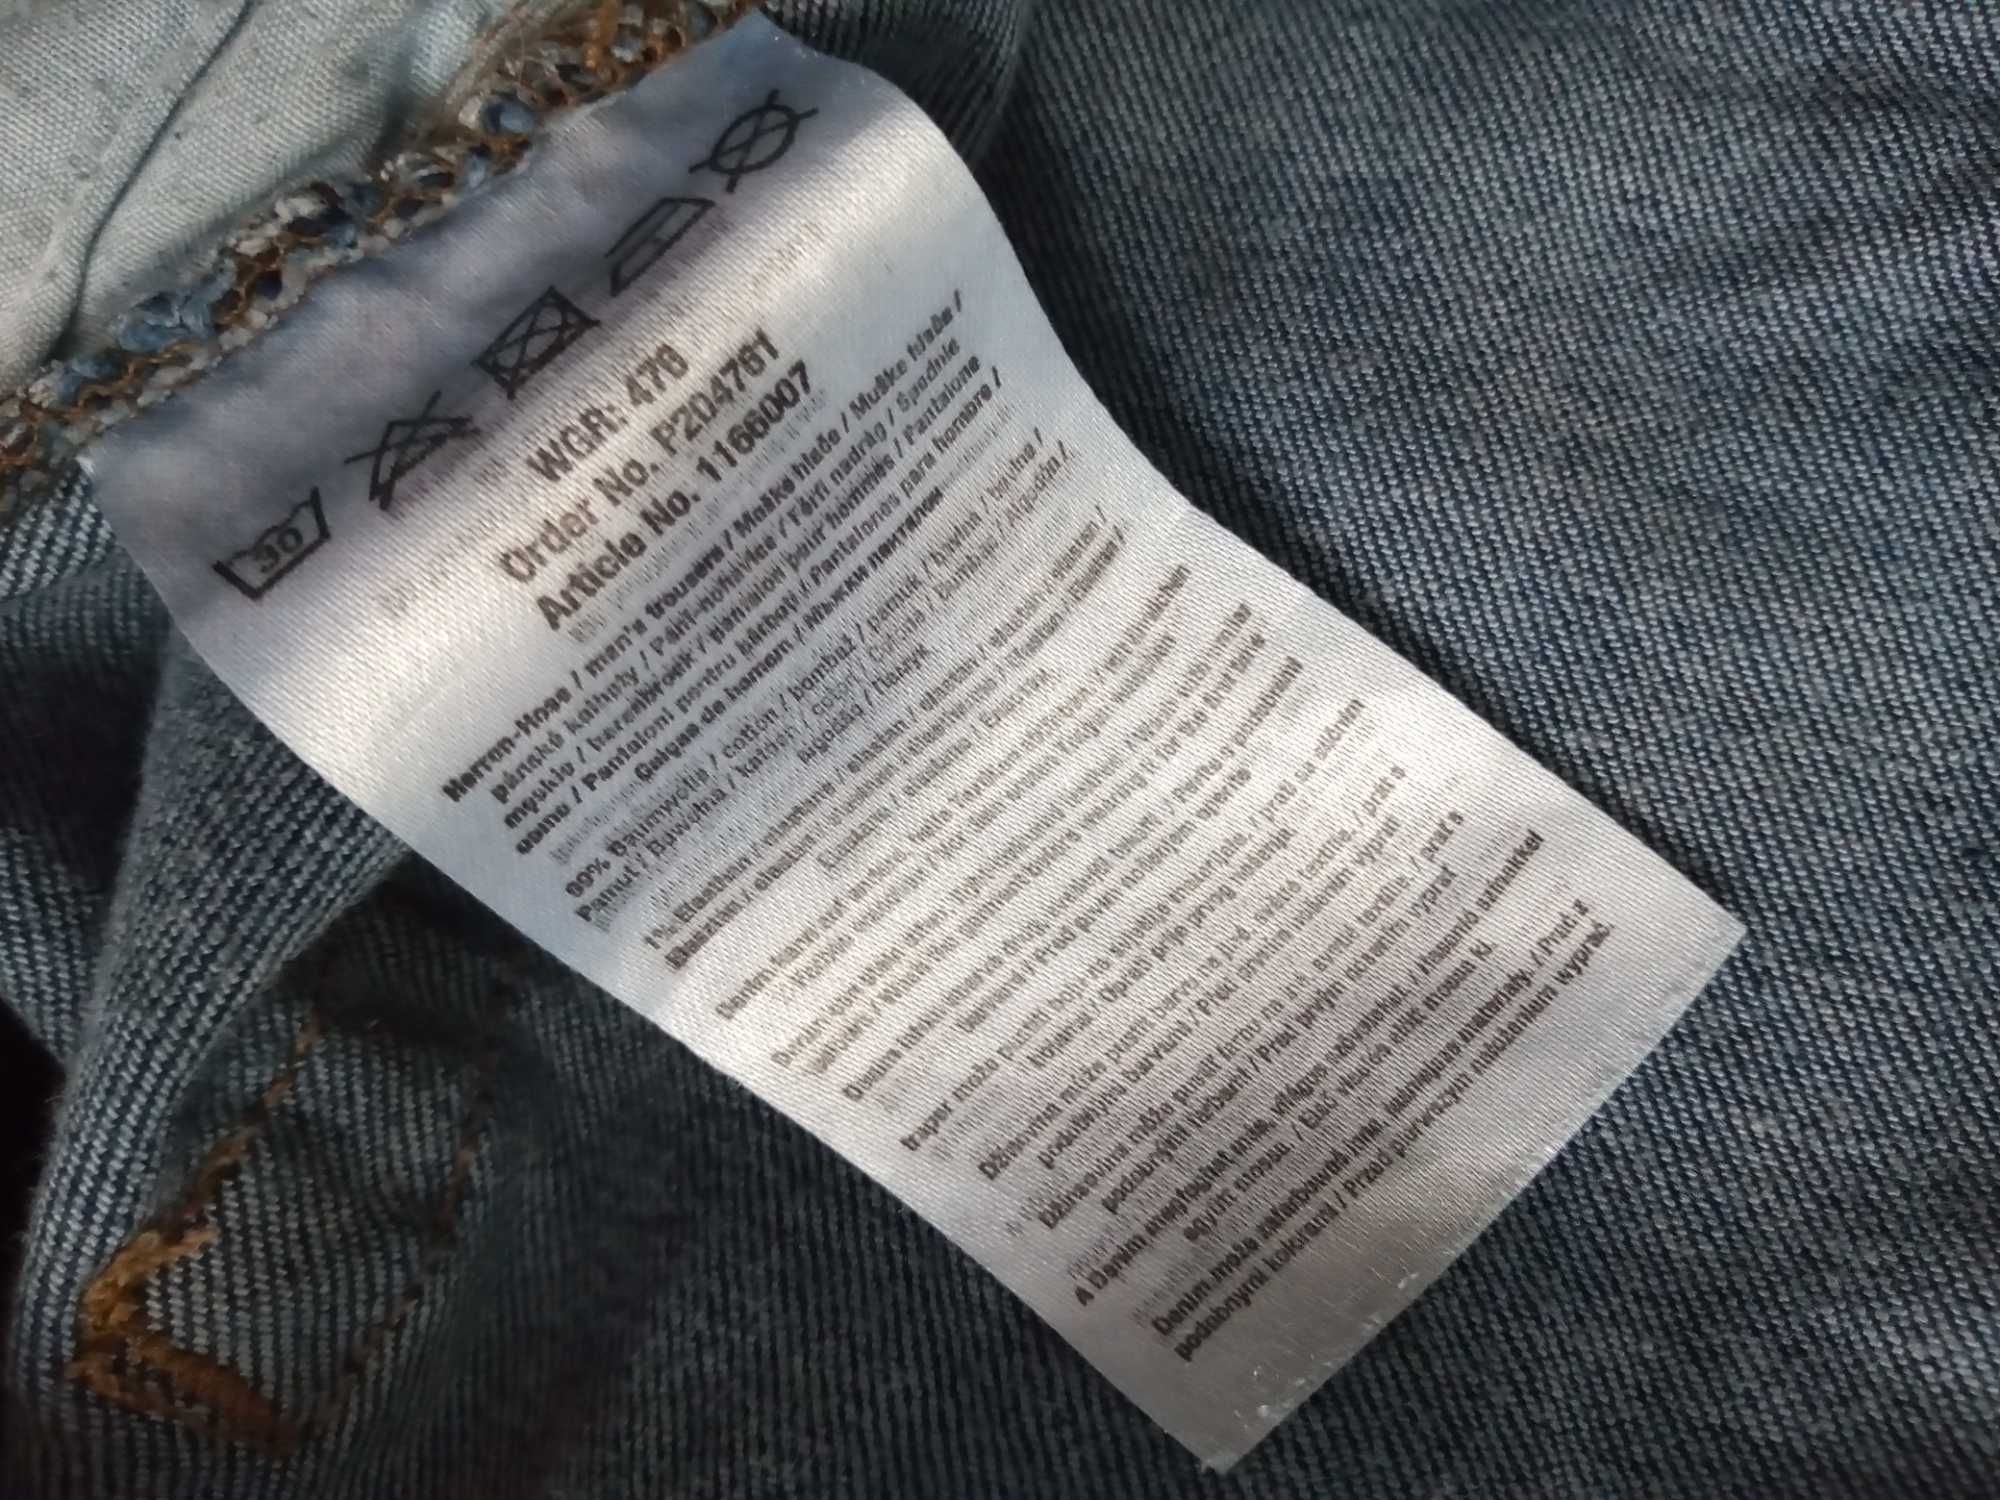 Spodnie jeans X- Mail XL